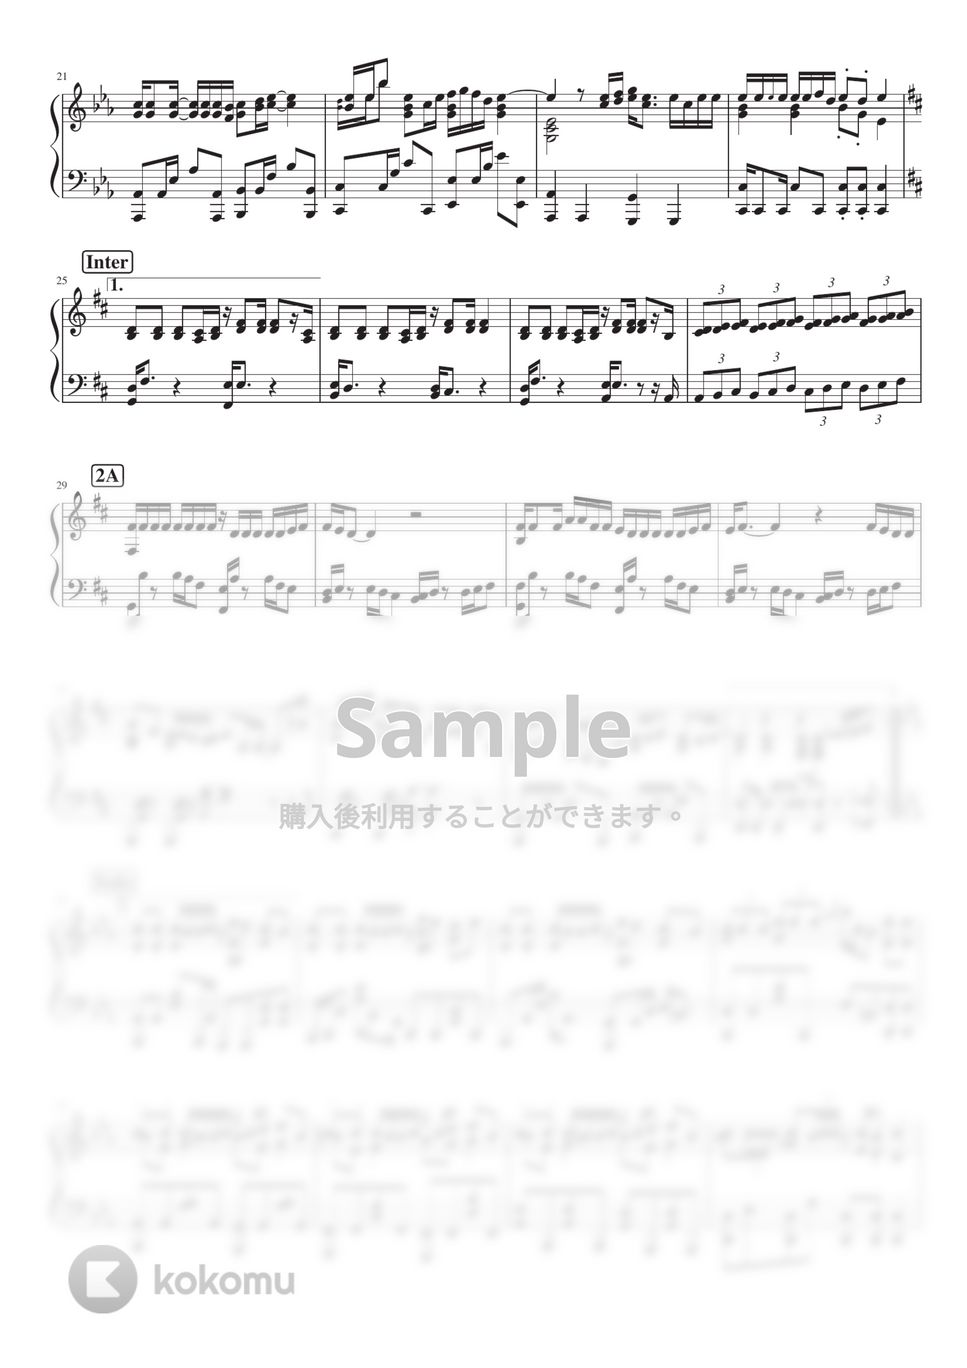 羽生まゐご - 阿吽のビーツ (Piano Solo) by 深根 / Fukane